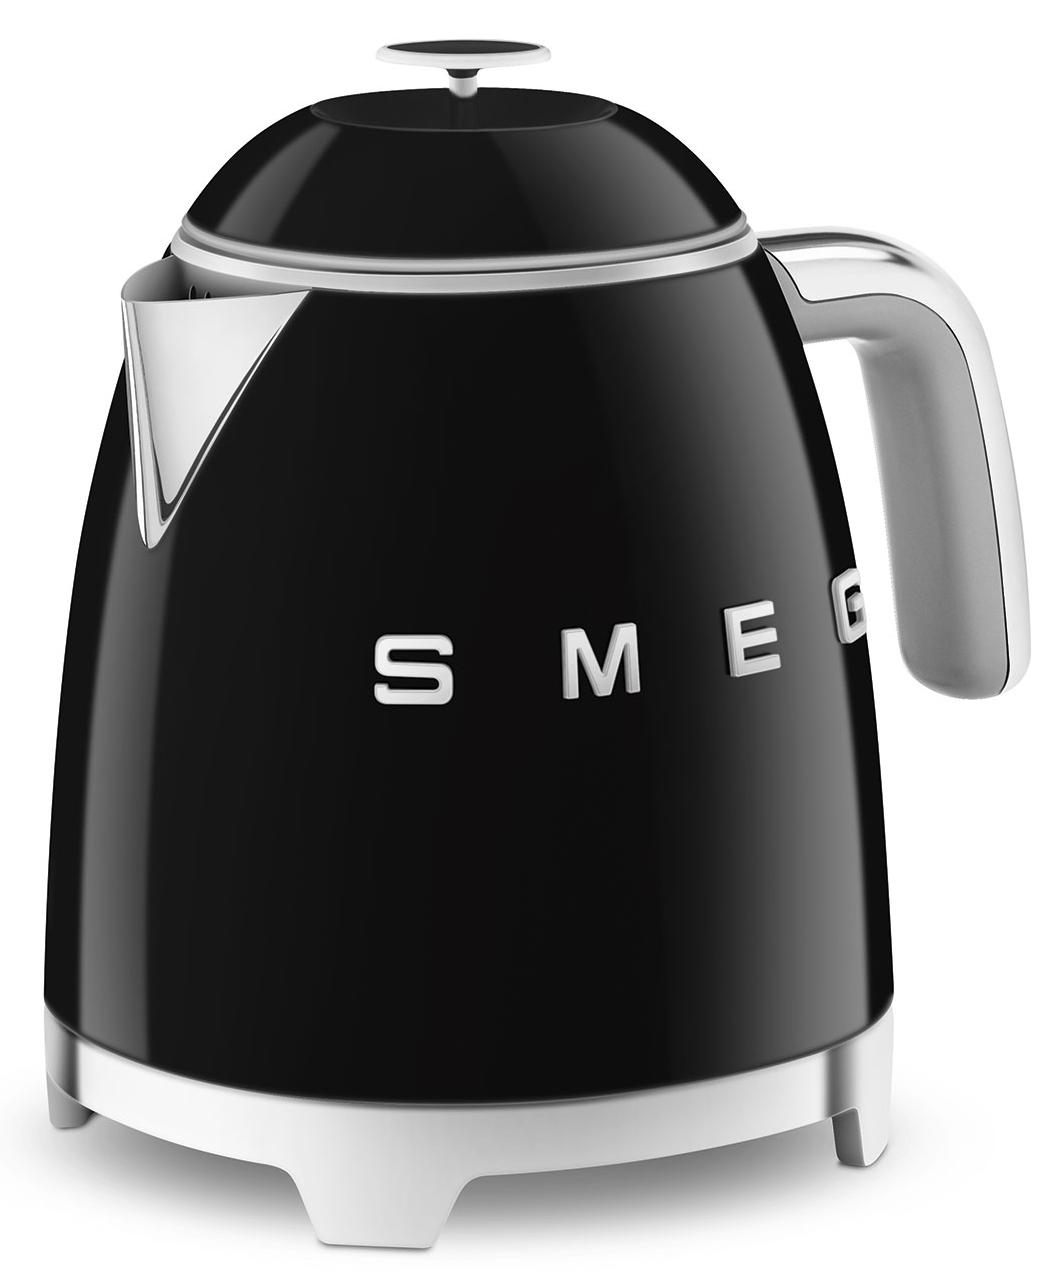 90939391 Электрический чайник Klf05bleu 0.8 л нержавеющая сталь цвет черный STLM-0425358 SMEG